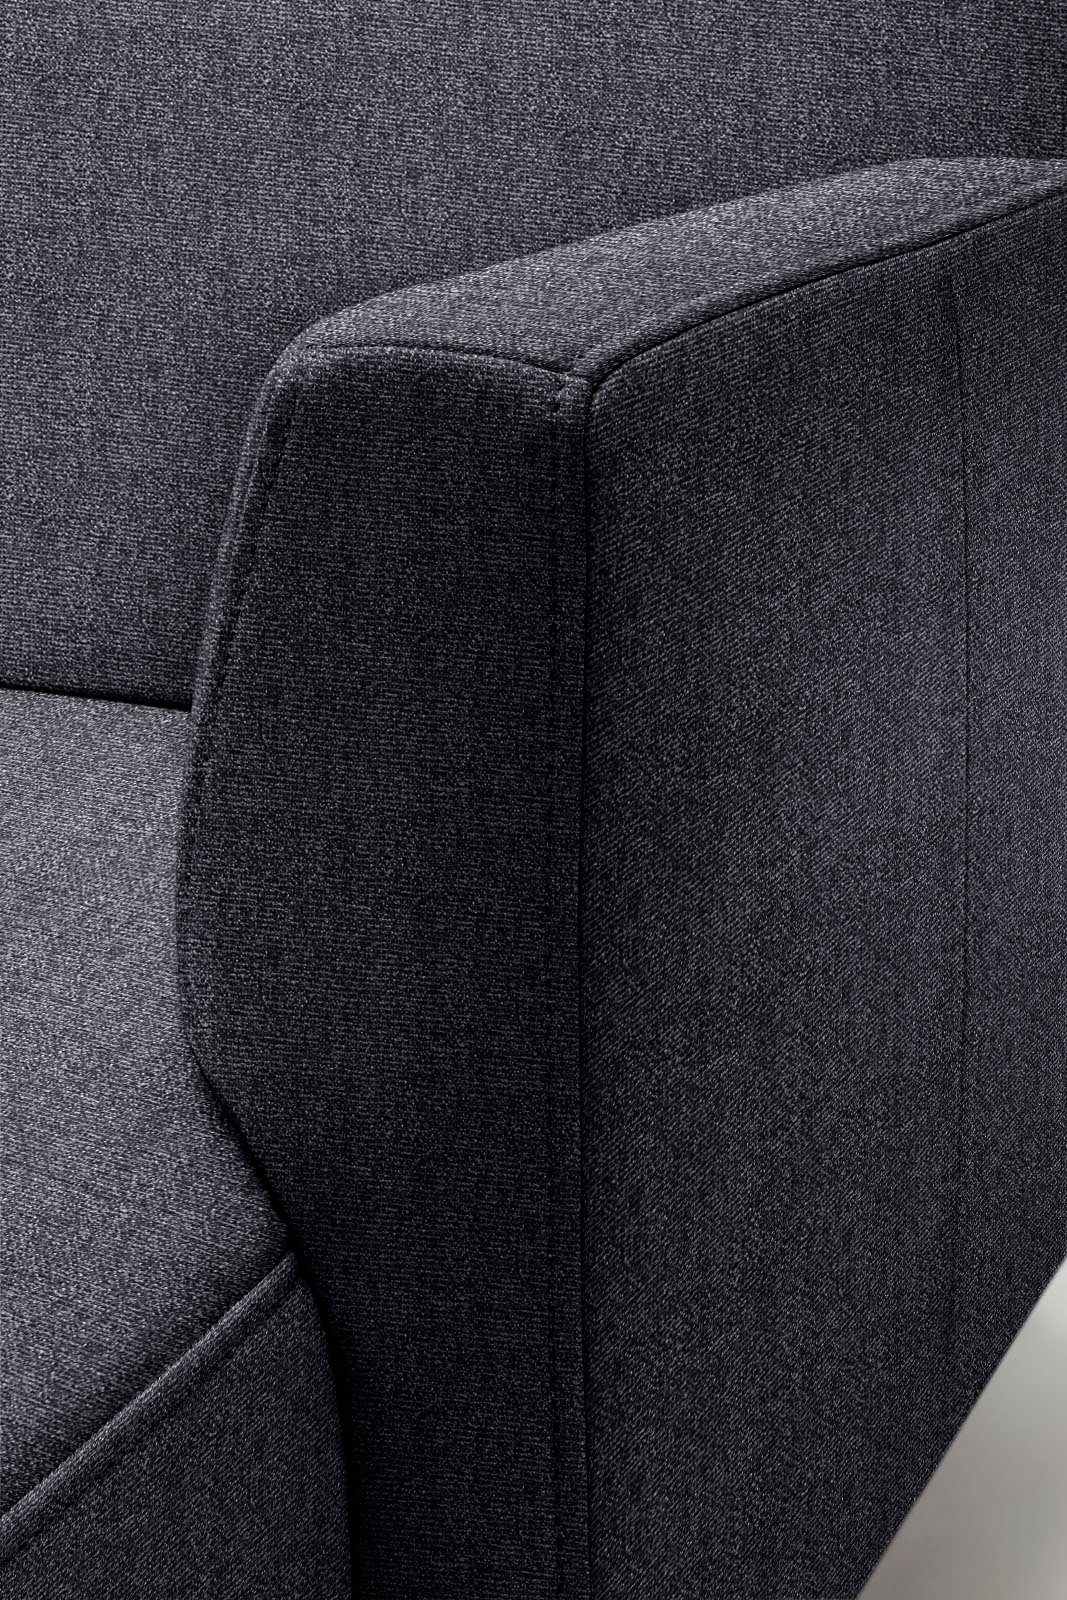 hülsta sofa 317 in Optik, schwereloser Ecksofa minimalistischer, Breite cm hs.446